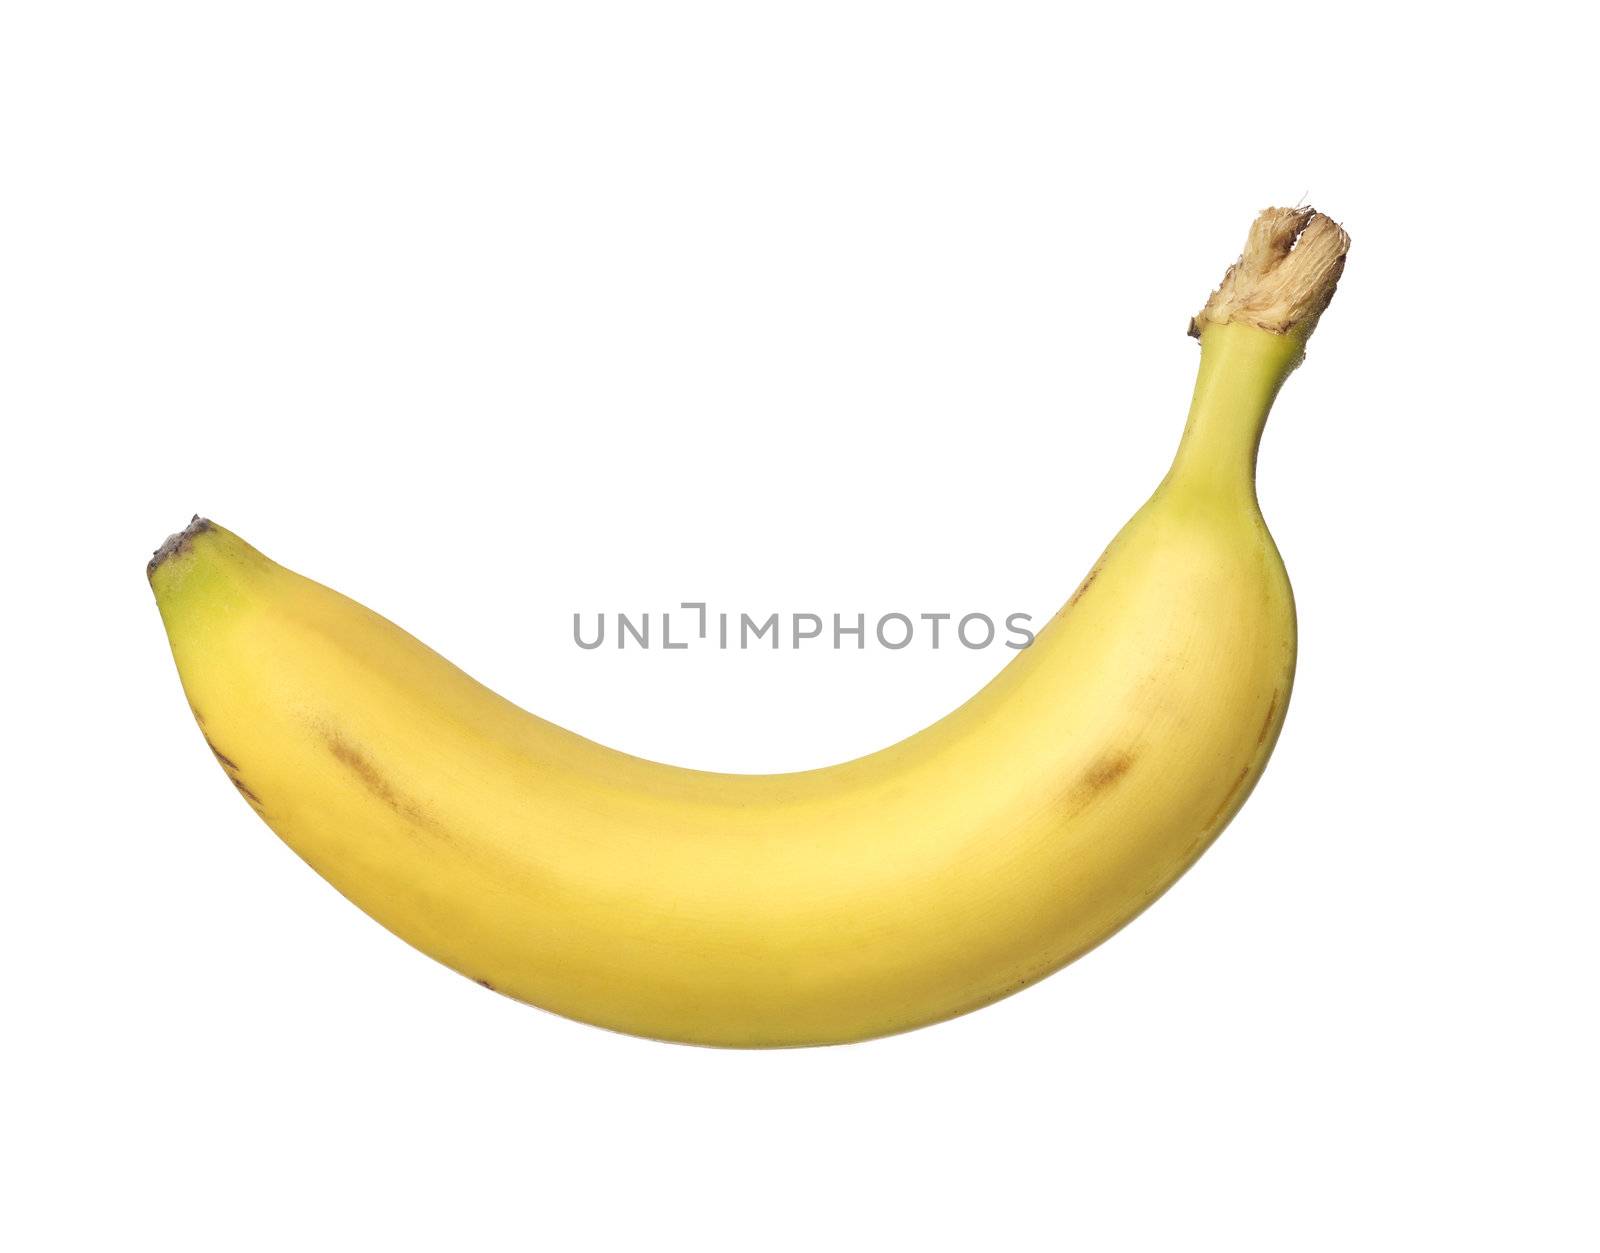 Banana by gemenacom